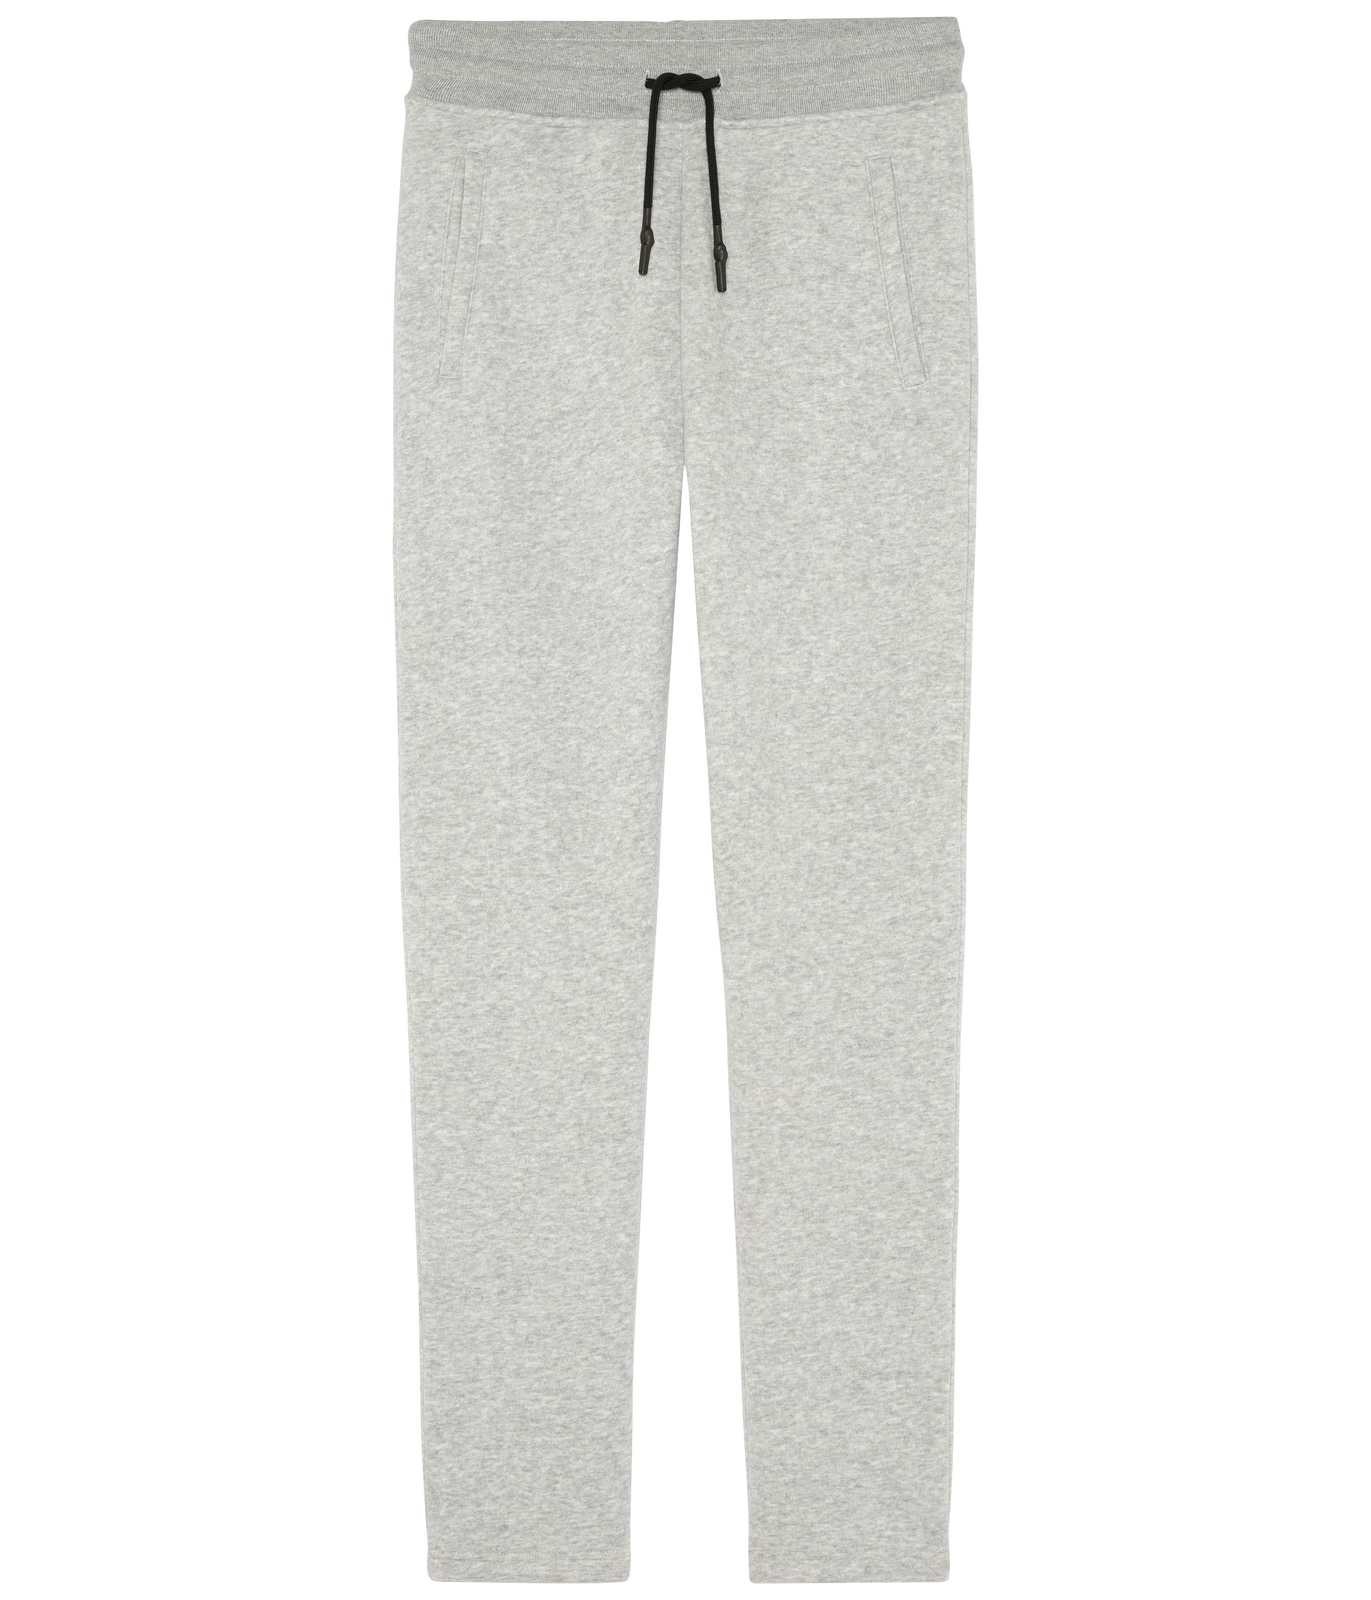 Grey cotton jason jogging pants | Quality brand - Europann